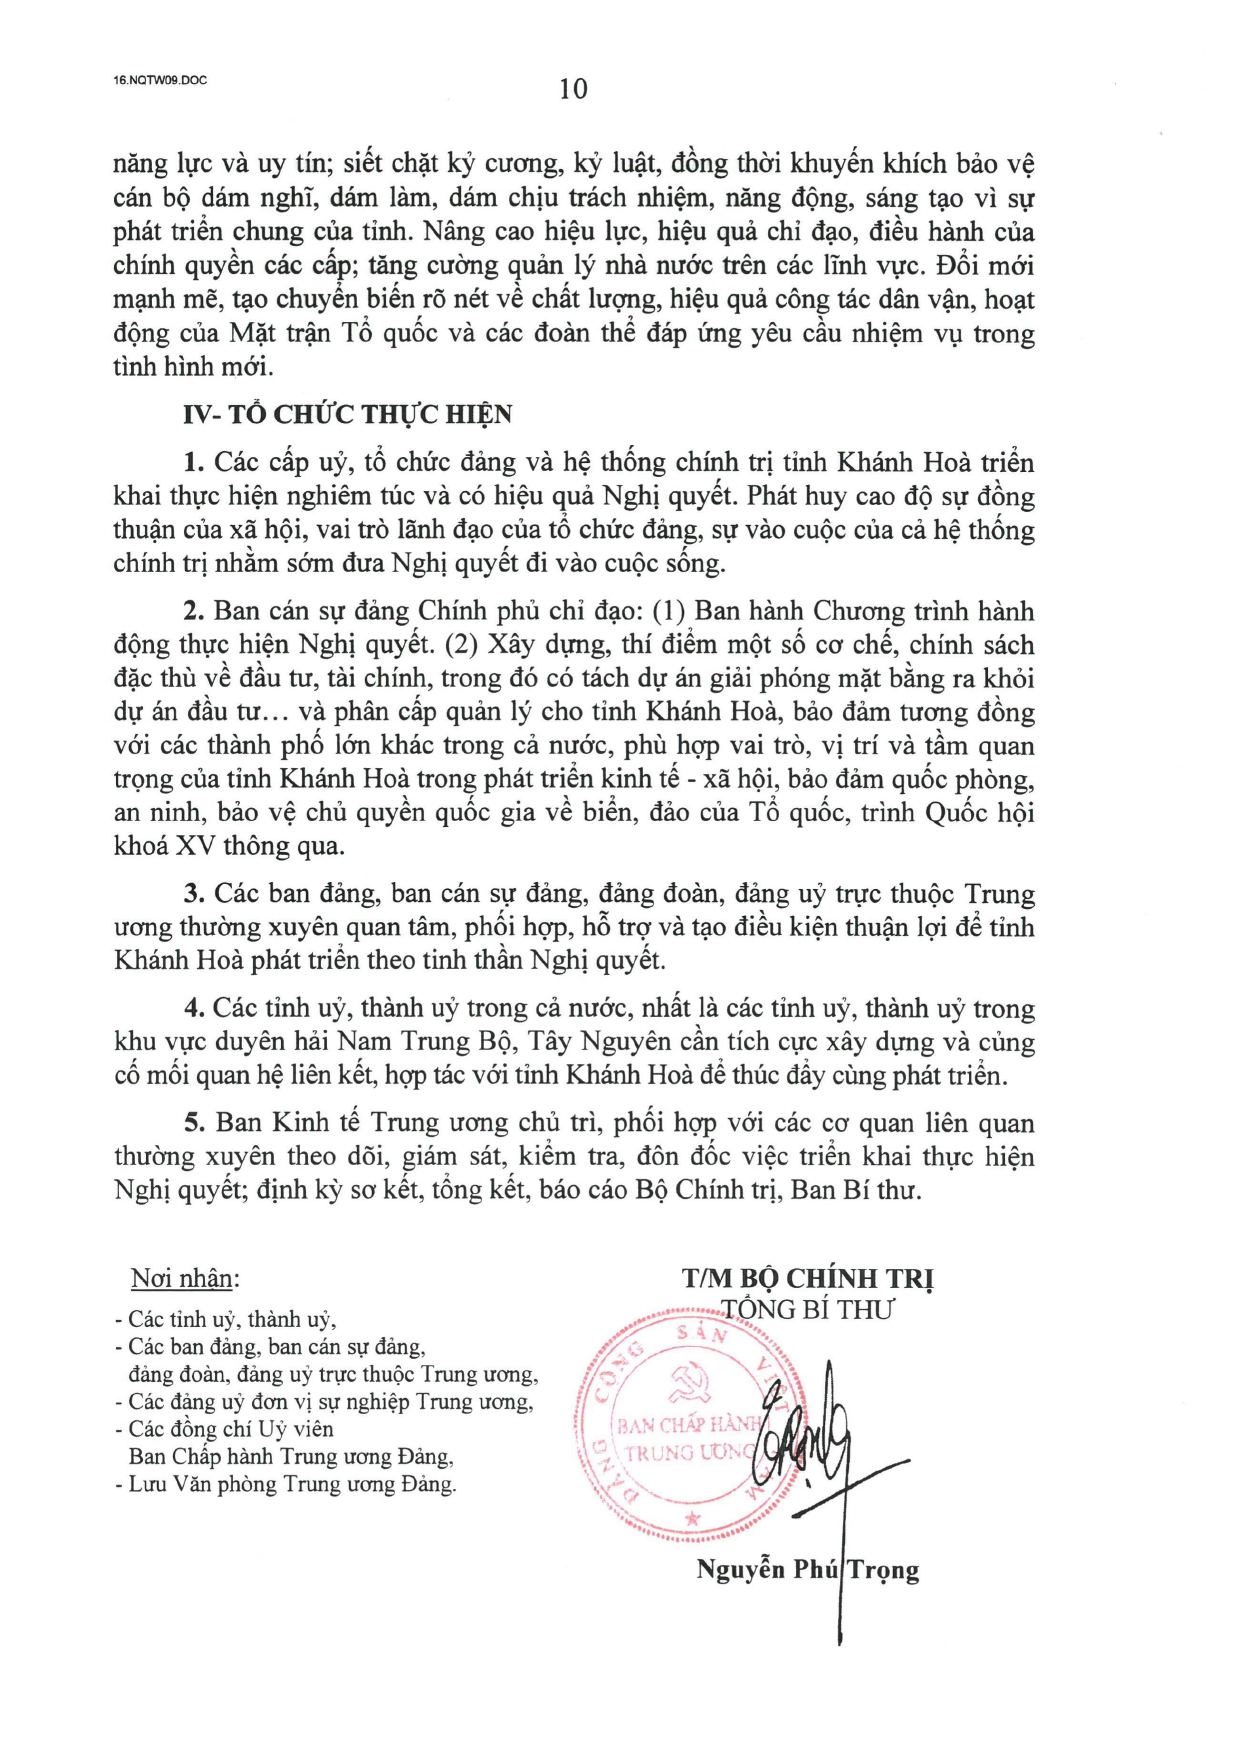 NQ-09-TW-phat trien tinh Khanh Hoa den nam 2030_pages-to-jpg-0010.jpg (939 KB)